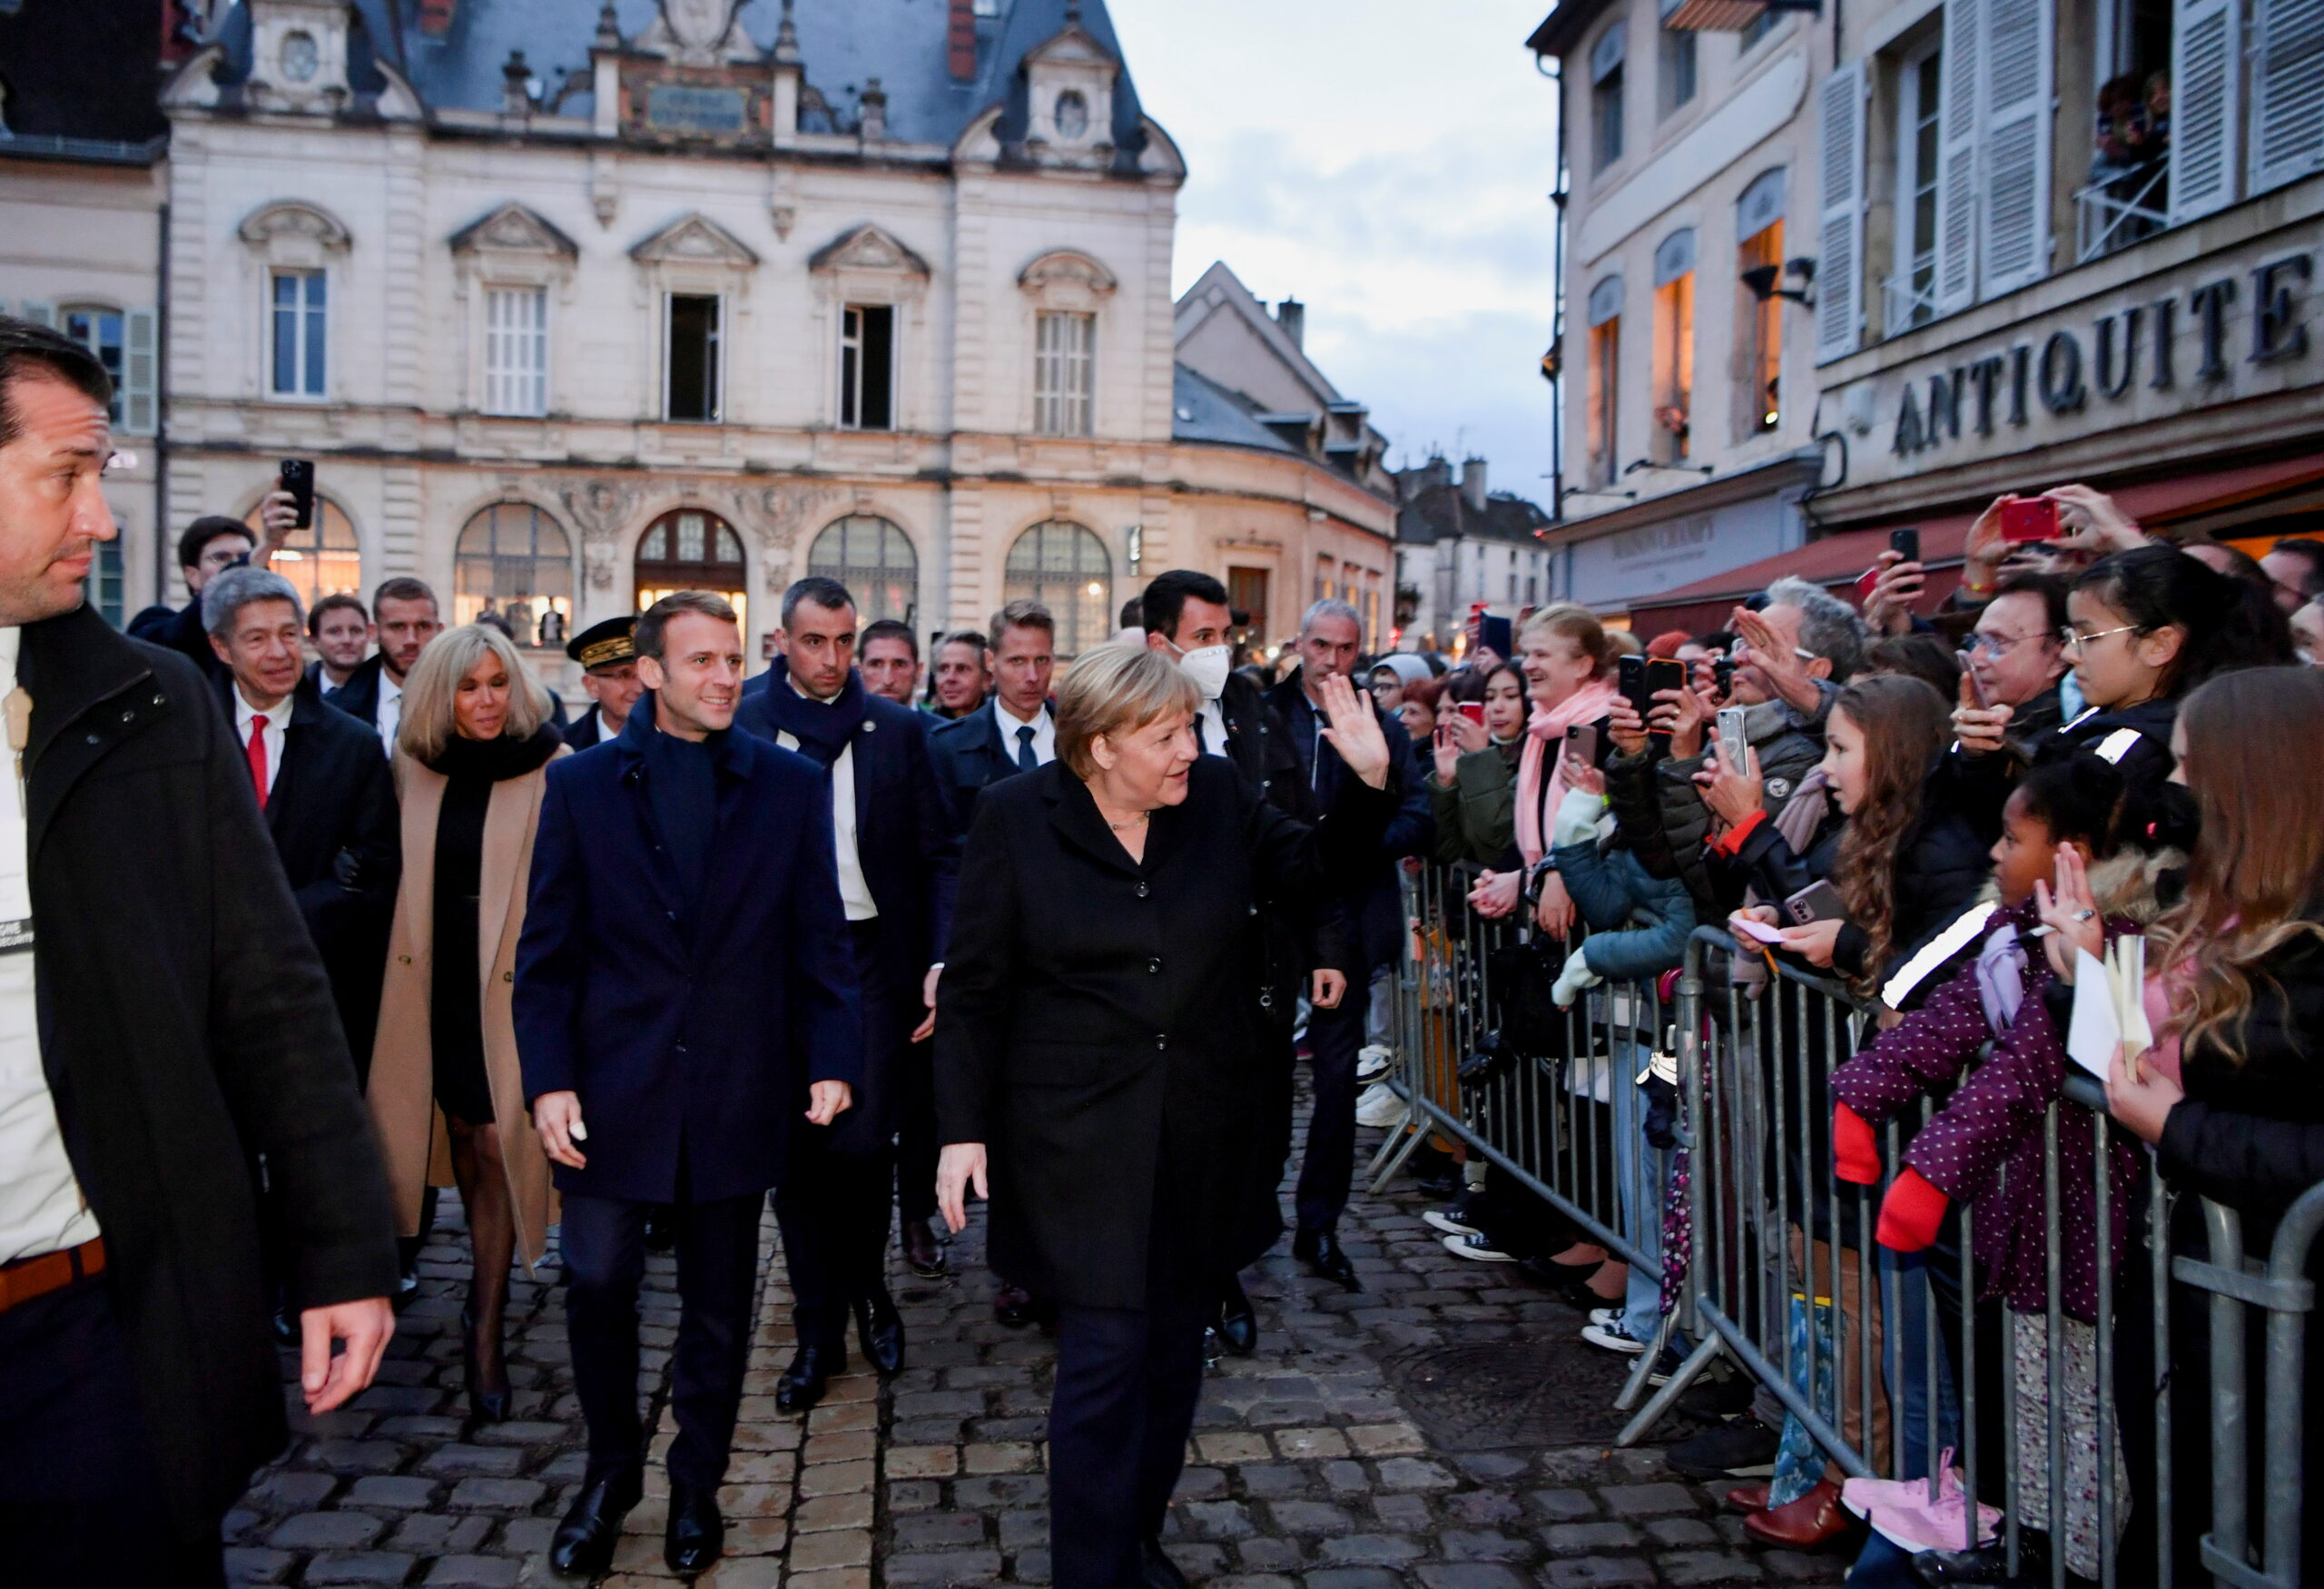 El ‘adieu’ más personal de Macron a Merkel